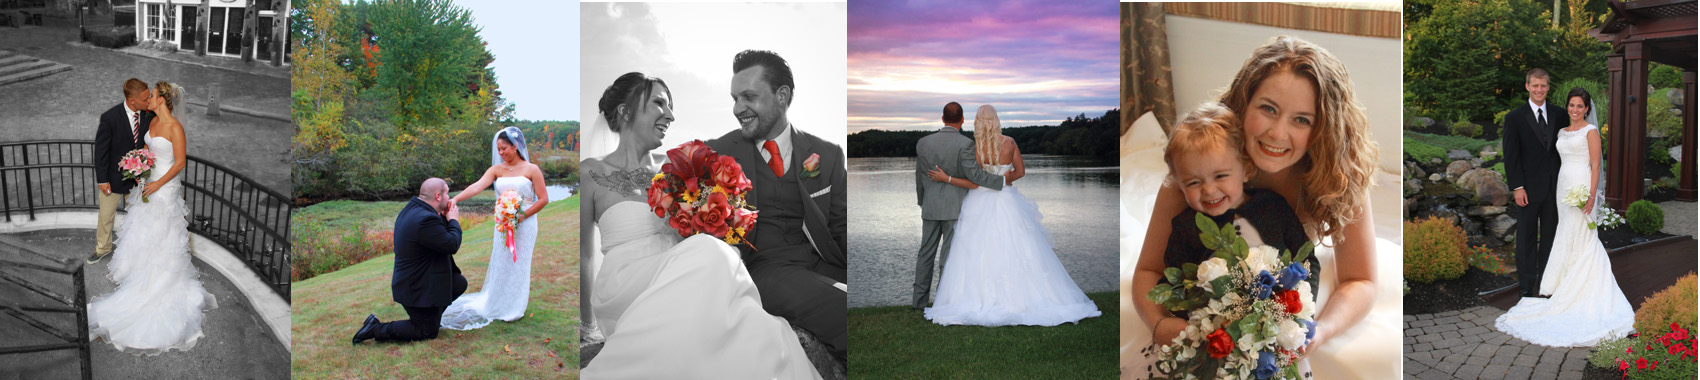 Wedding images and poses, wedding photography, wedding family photos, reception photos, outdoor wedding photos  